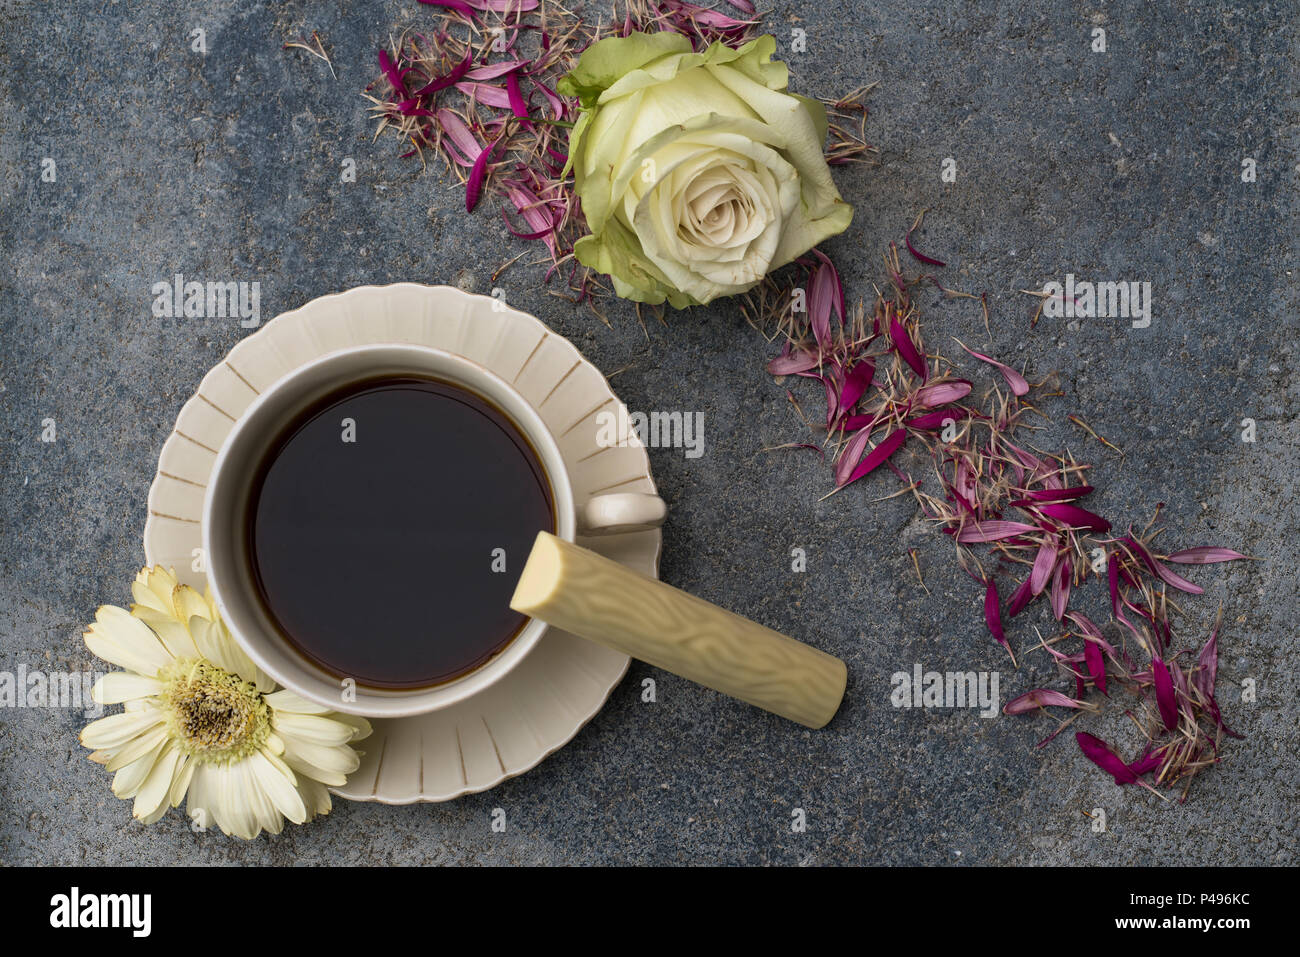 Eine Tasse mit Kaffee steht vor der dunklen konkreten Hintergrund. Champagnerfarbenen Blüten und Blumen Blüten das Bild schmücken. Eine Süßigkeit aus weißem Stockfoto